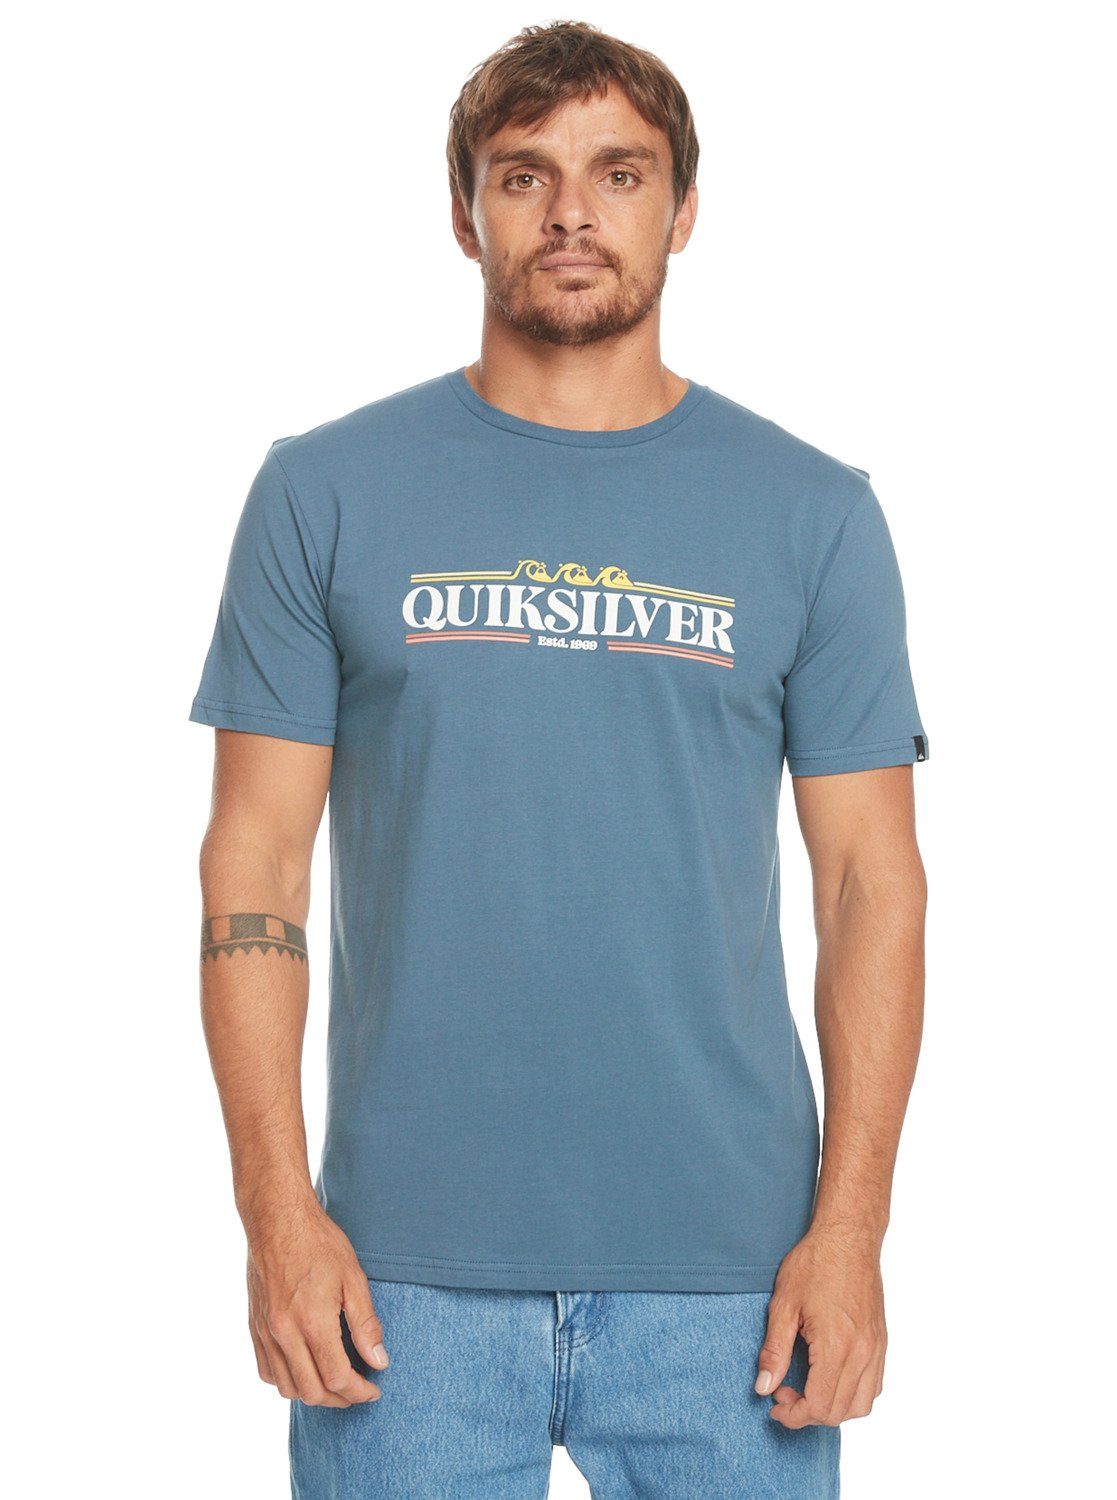 Bering Sea Line Quiksilver T-Shirt Gradient